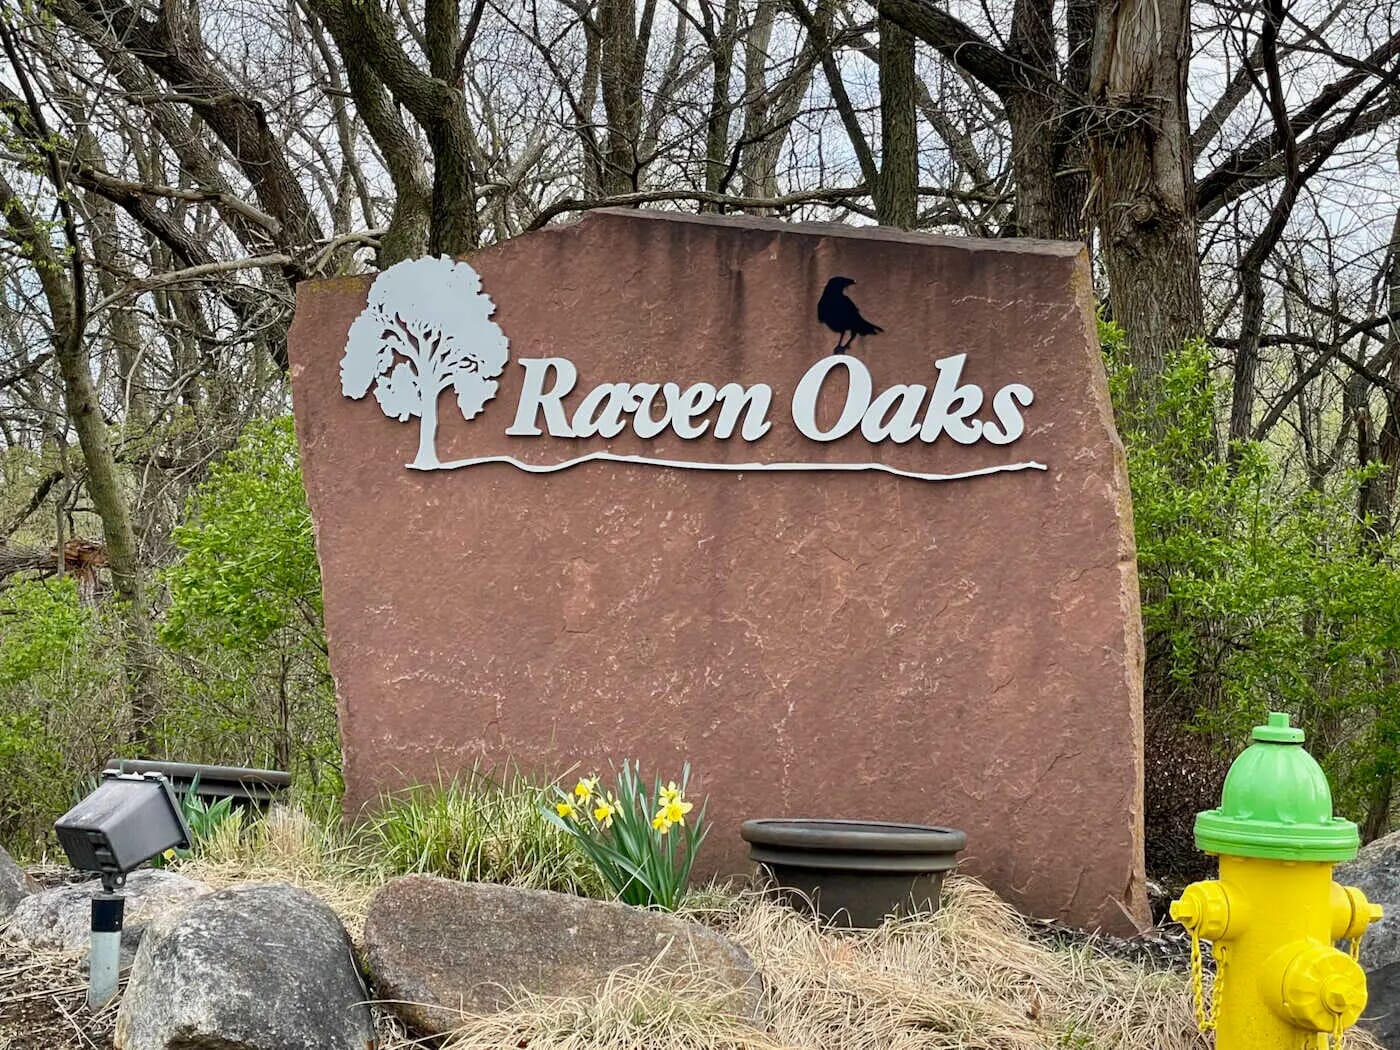 Raven Oaks Neighborhood - Omaha, Nebraska